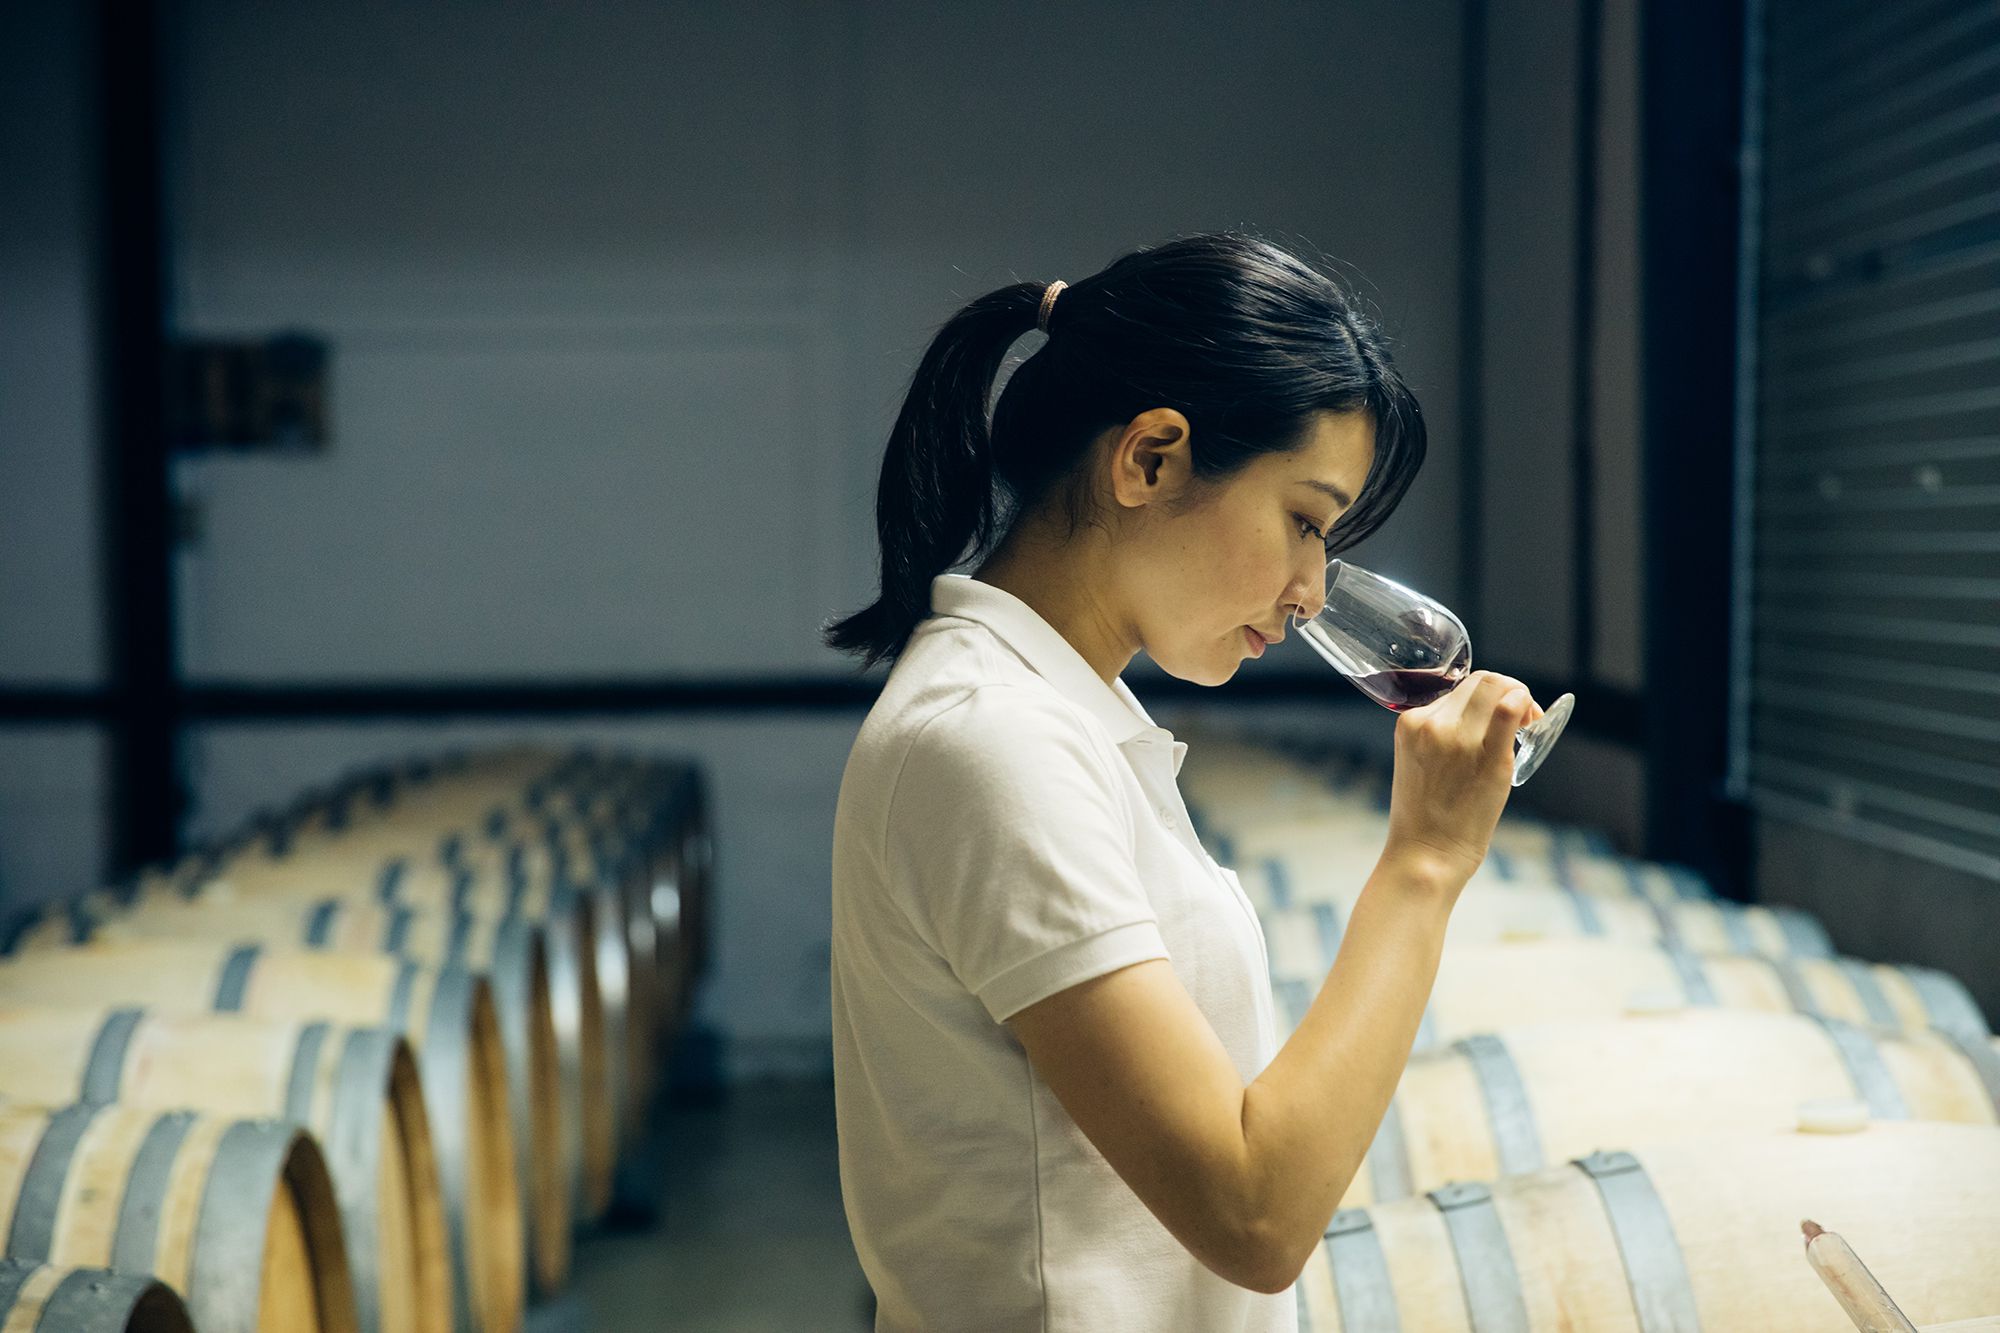 熟成中のワインを定期的にチェックする彩奈。ブドウもワインもつねに観察することが大事と、ボルドー大学の故ドゥニ・デュブルデュー教授から教えられた。